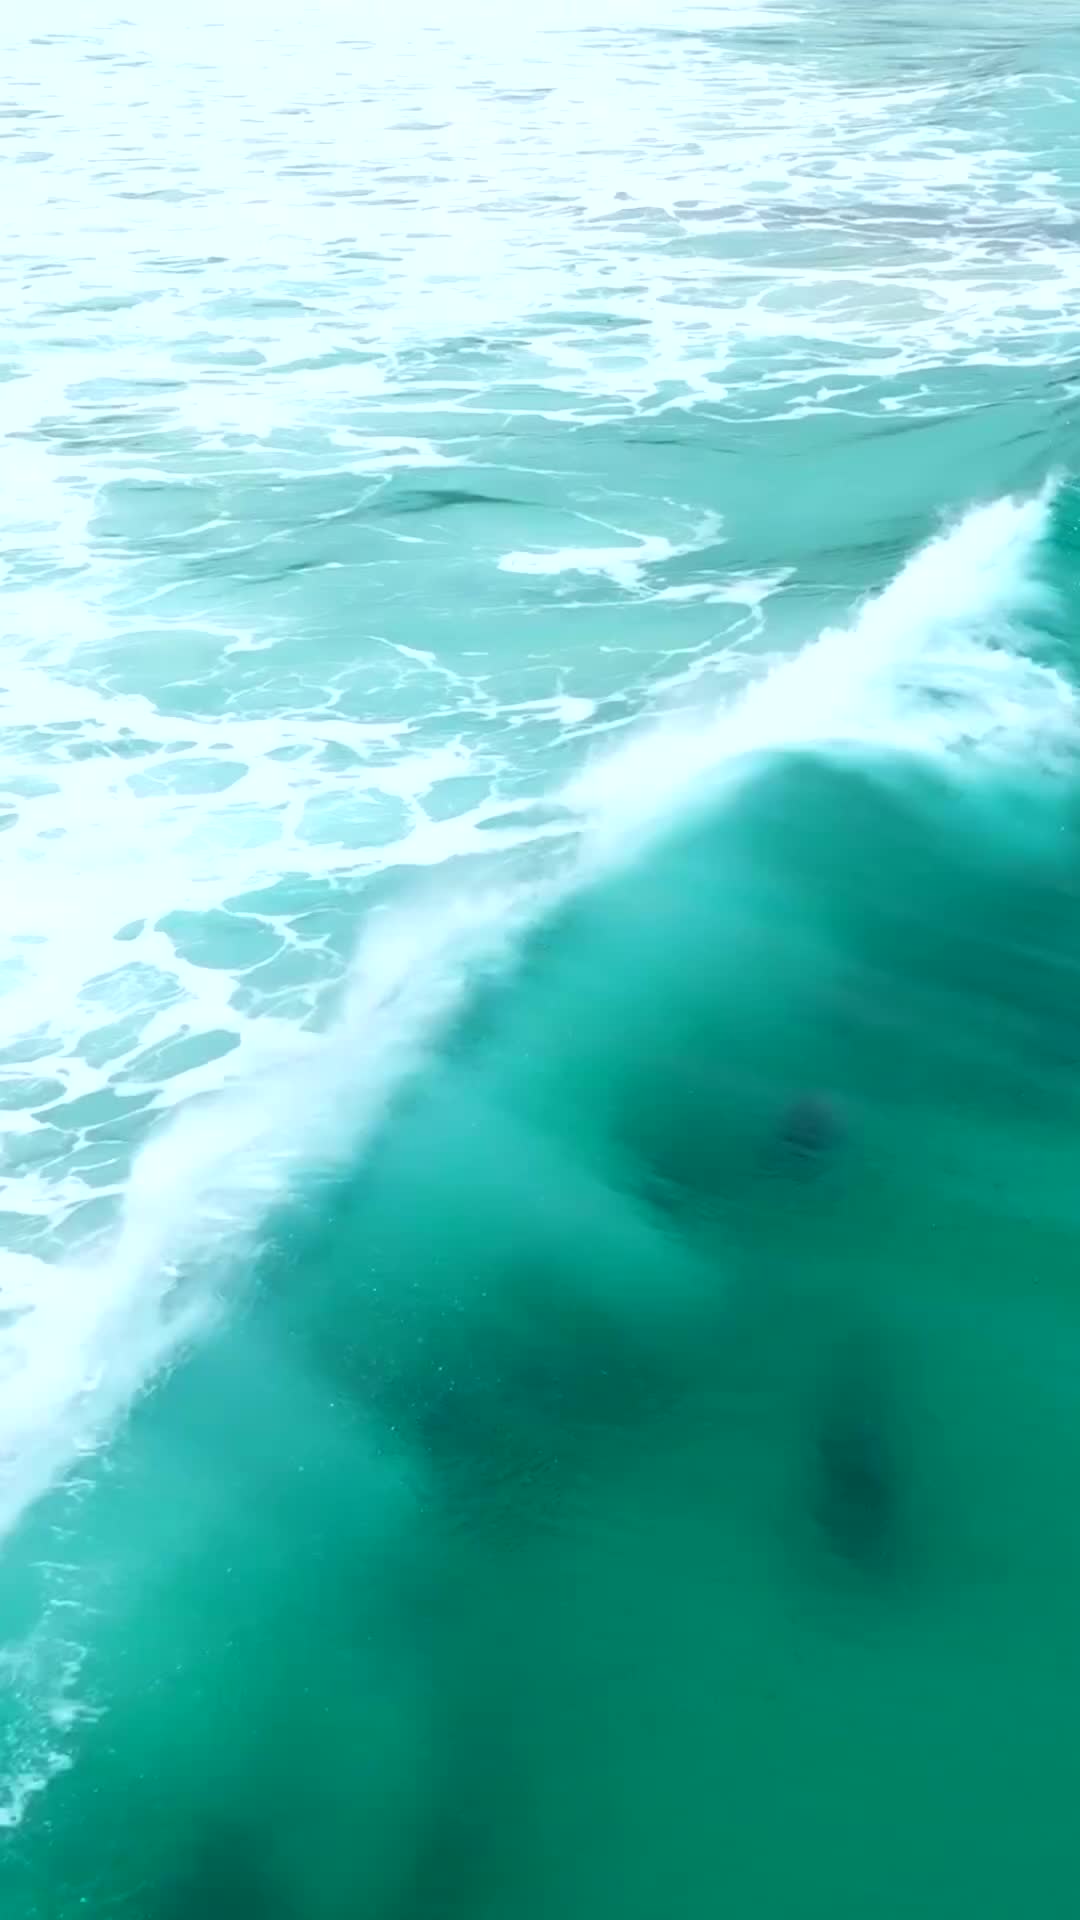 Dolphins Surfing in Esperance, Western Australia